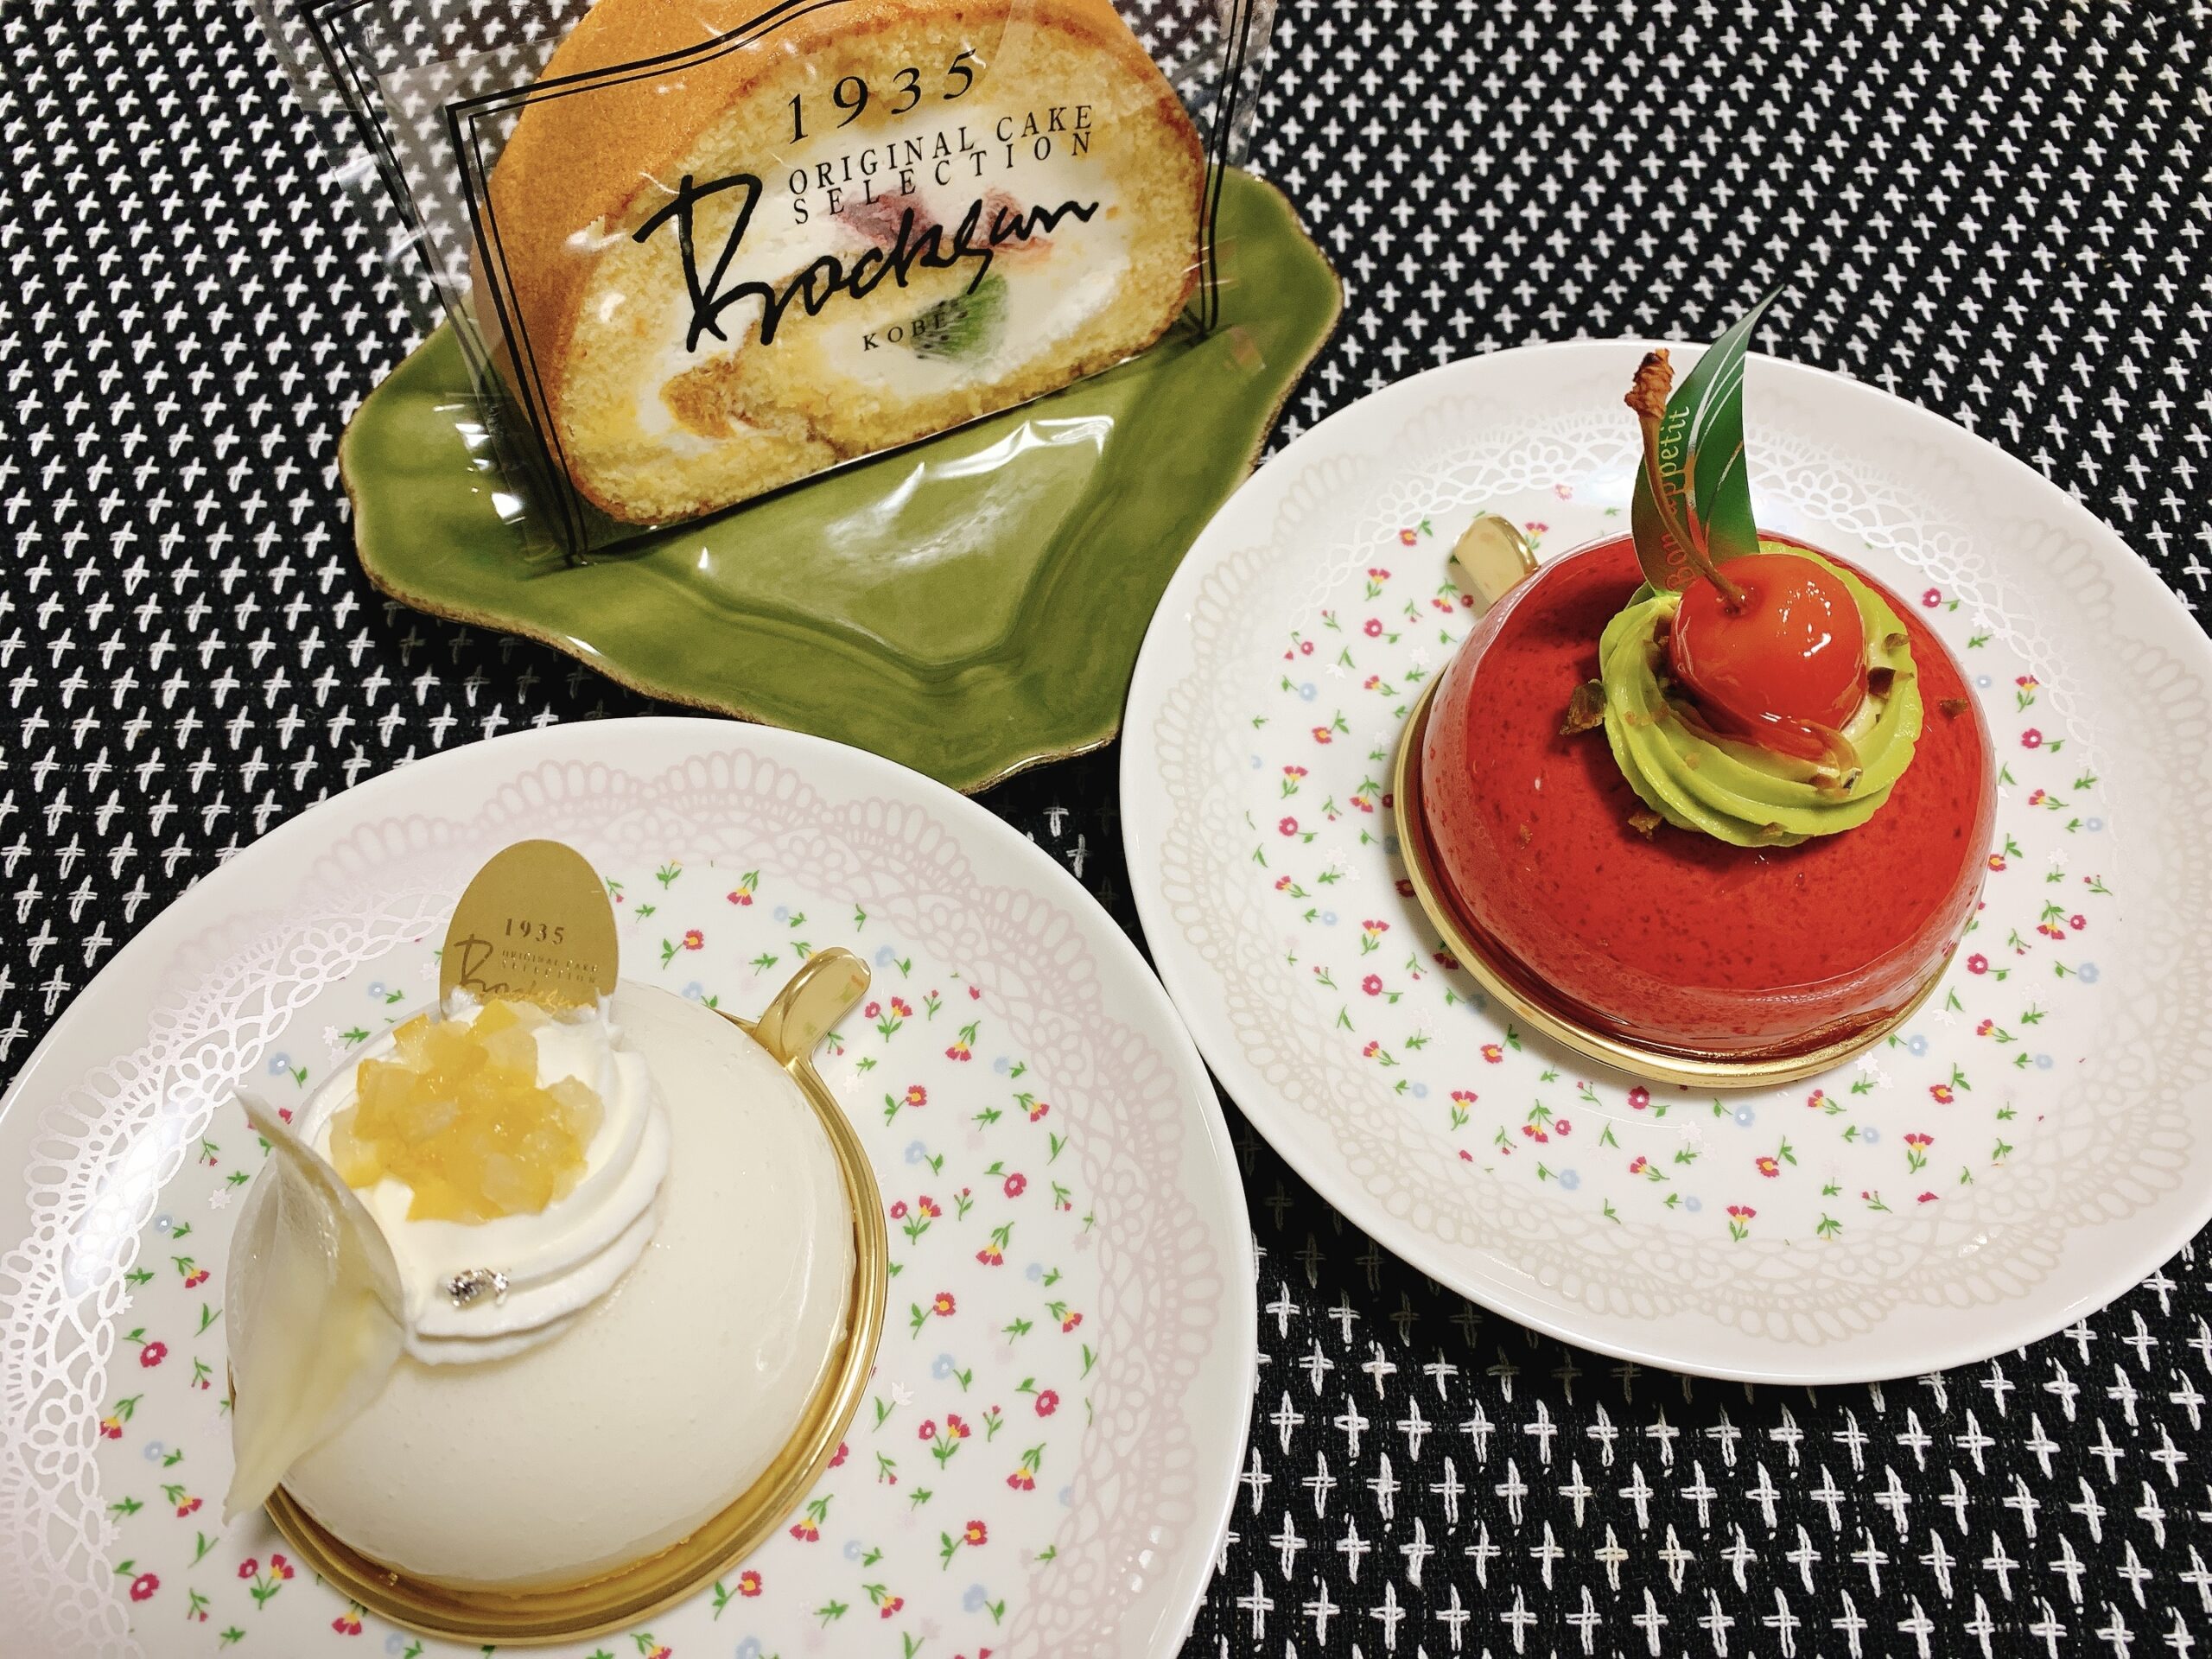 老舗洋菓子店 ボックサン で10日間限定のケーキが販売されています 気になる期間はいつまで 神戸ふらっとグルメ